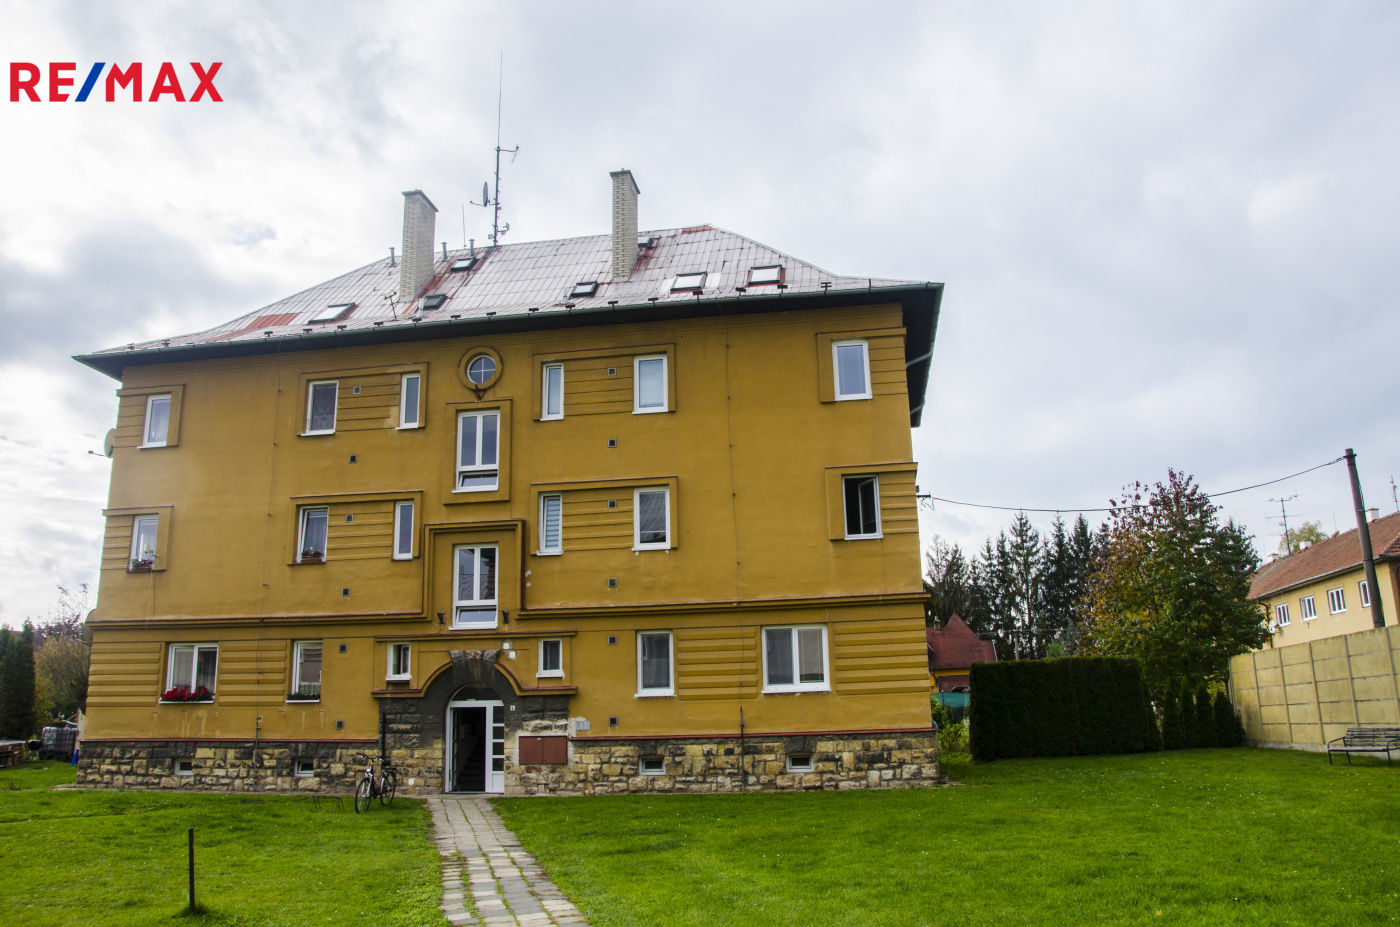 Prodej bytu 1+1 v osobním vlastnictví, 46 m2, Moravská Třebová